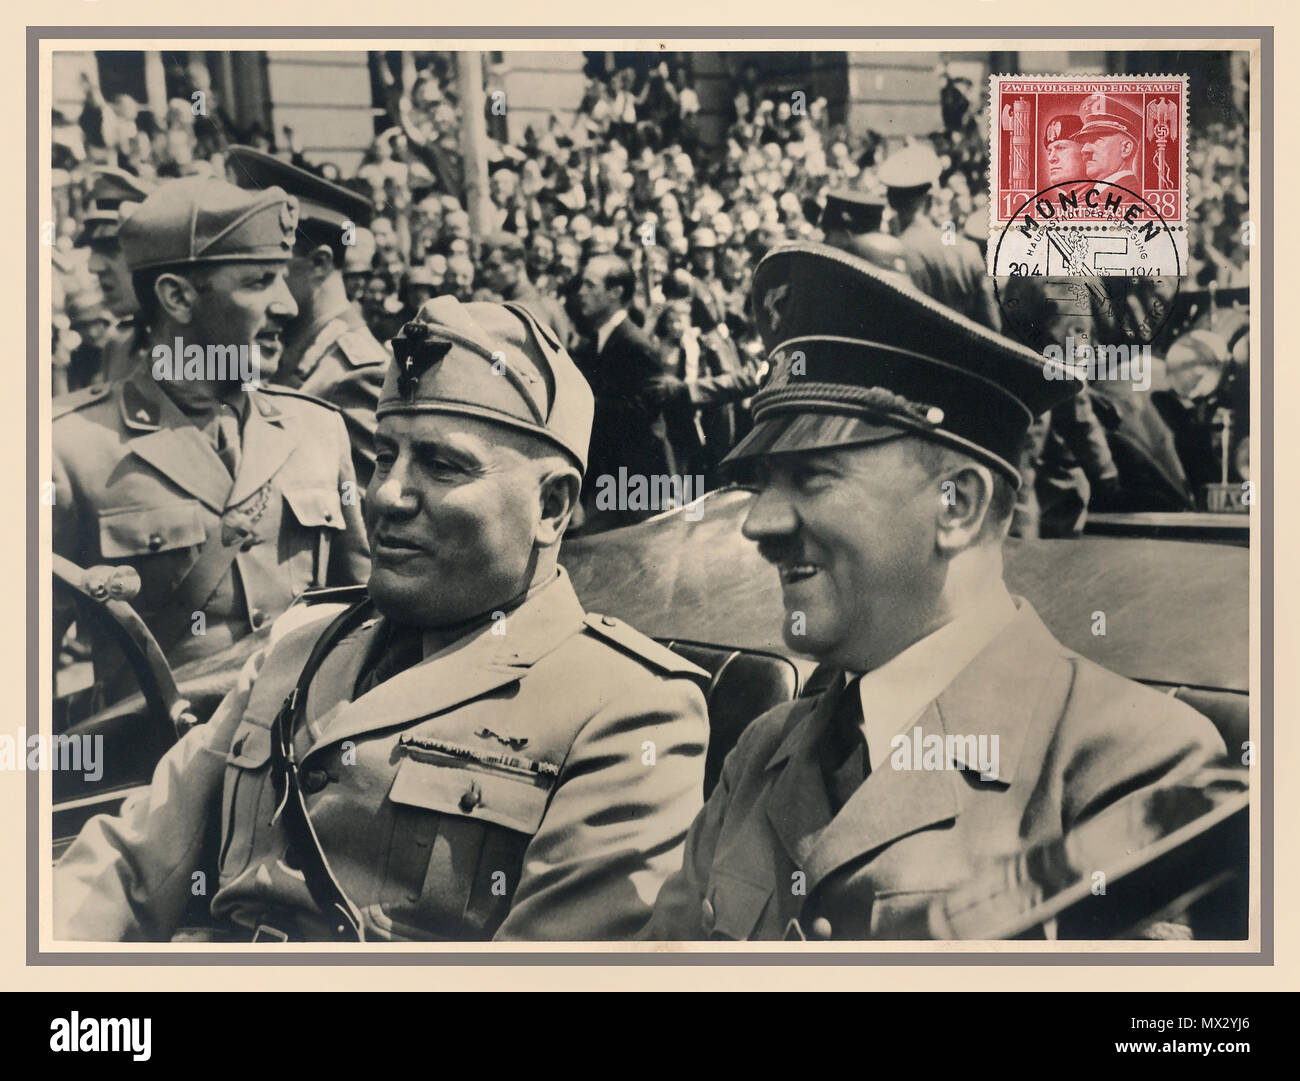 Cartolina tedesca di seppia vintage 1940 con speciale francobollo commemorativo Benito Mussolini e Adolf Hitler in Mercedes Car aperta Monaco di Baviera, Germania 1940 giugno durante il WW2 Foto Stock